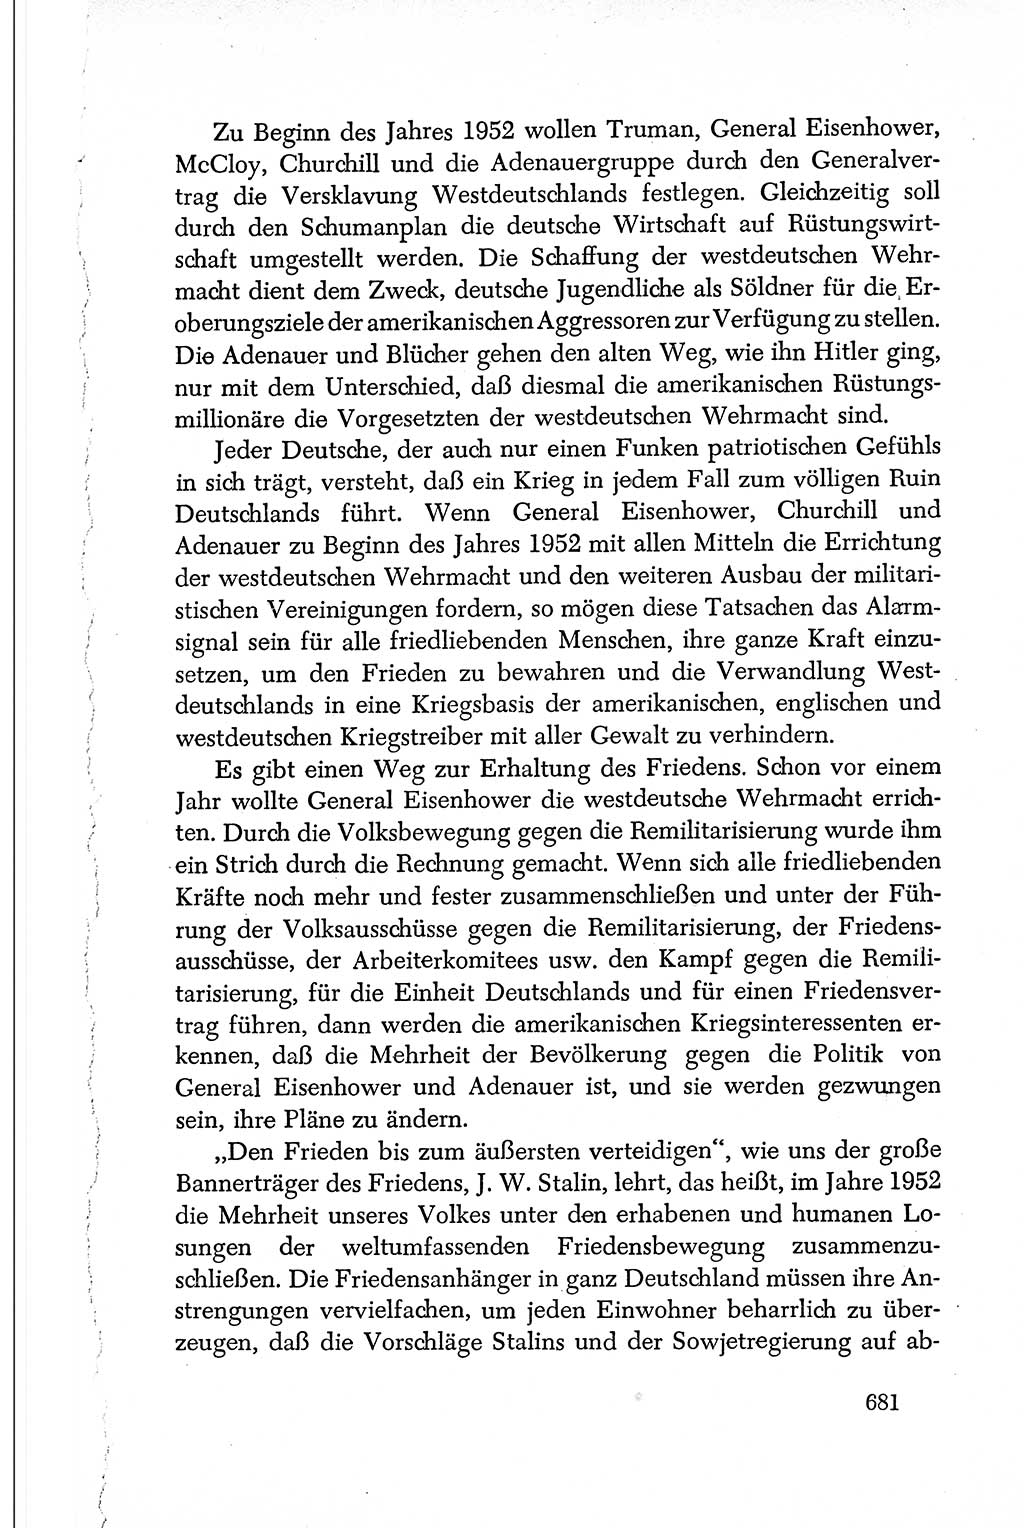 Dokumente der Sozialistischen Einheitspartei Deutschlands (SED) [Deutsche Demokratische Republik (DDR)] 1950-1952, Seite 681 (Dok. SED DDR 1950-1952, S. 681)